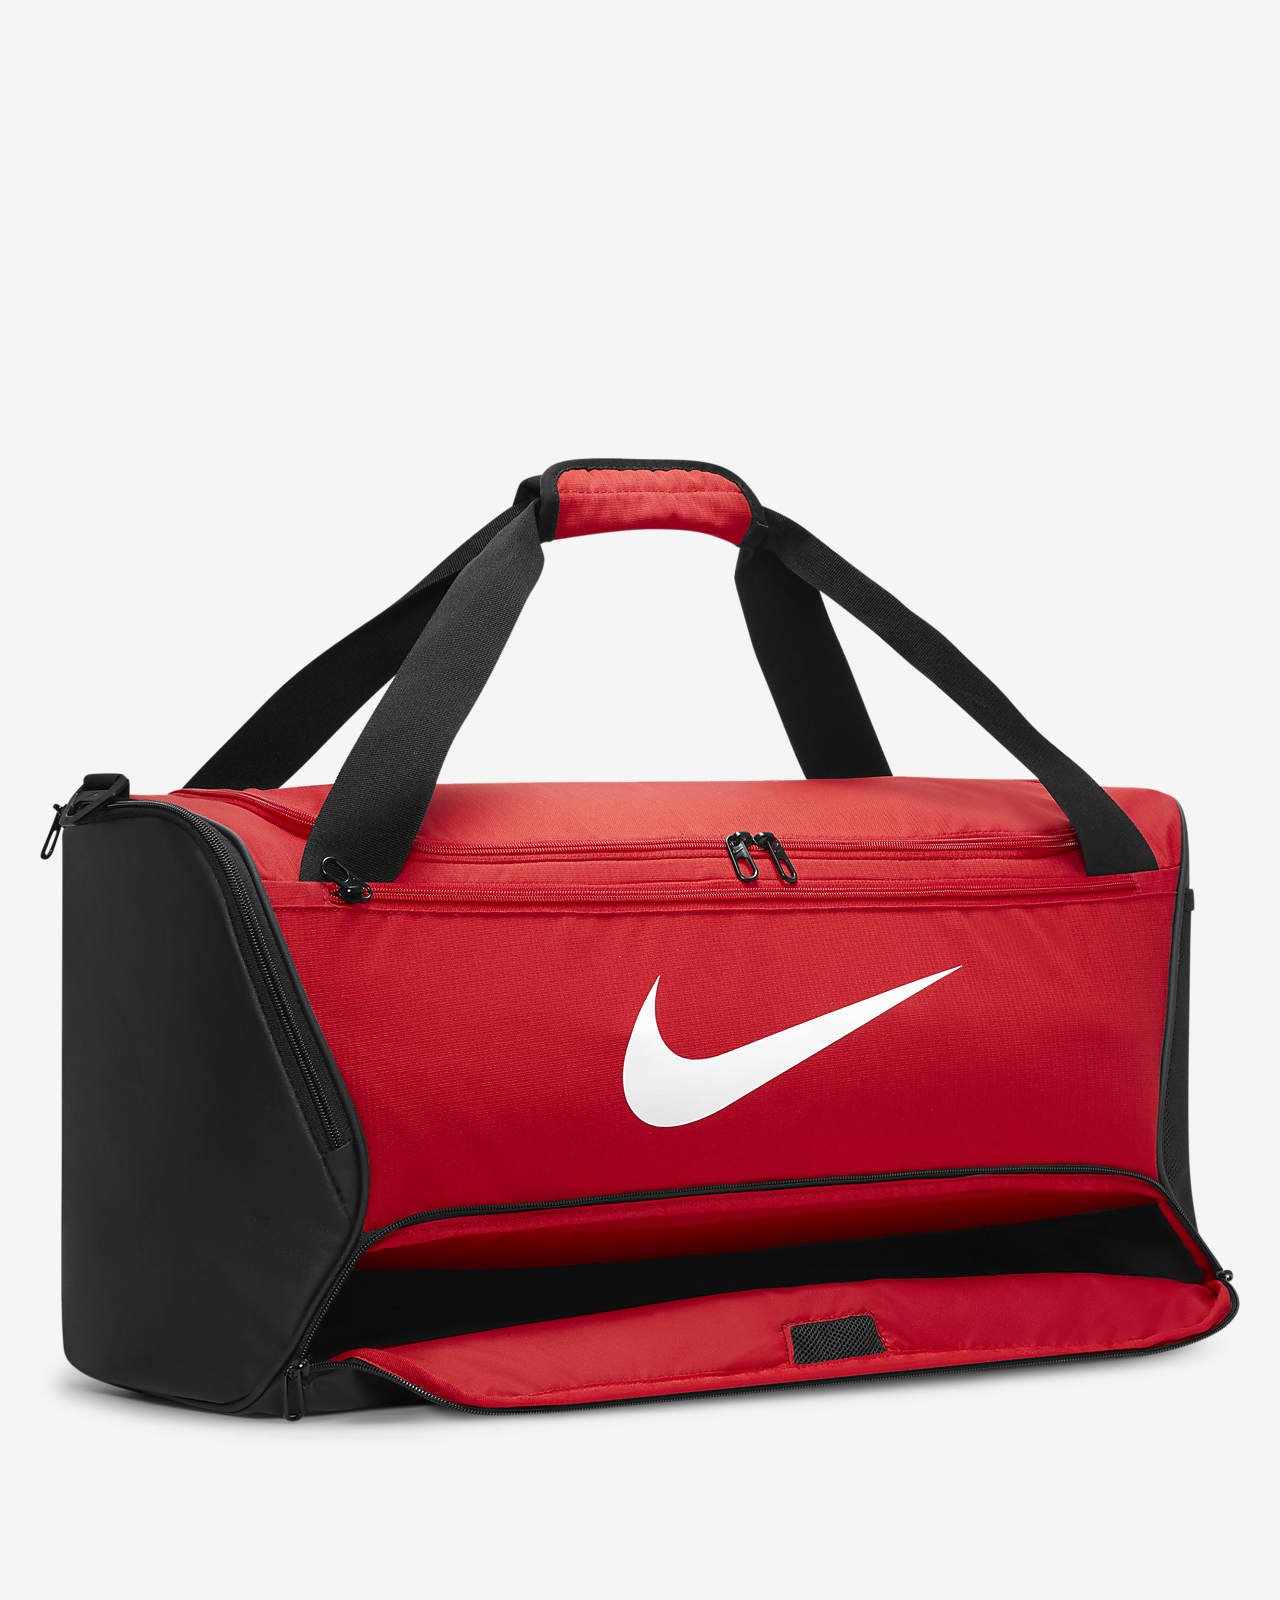 Nike Brasilia 6 Large Duffel at Foot Locker  Nike duffle bag, Nike bags,  Womens gym bag